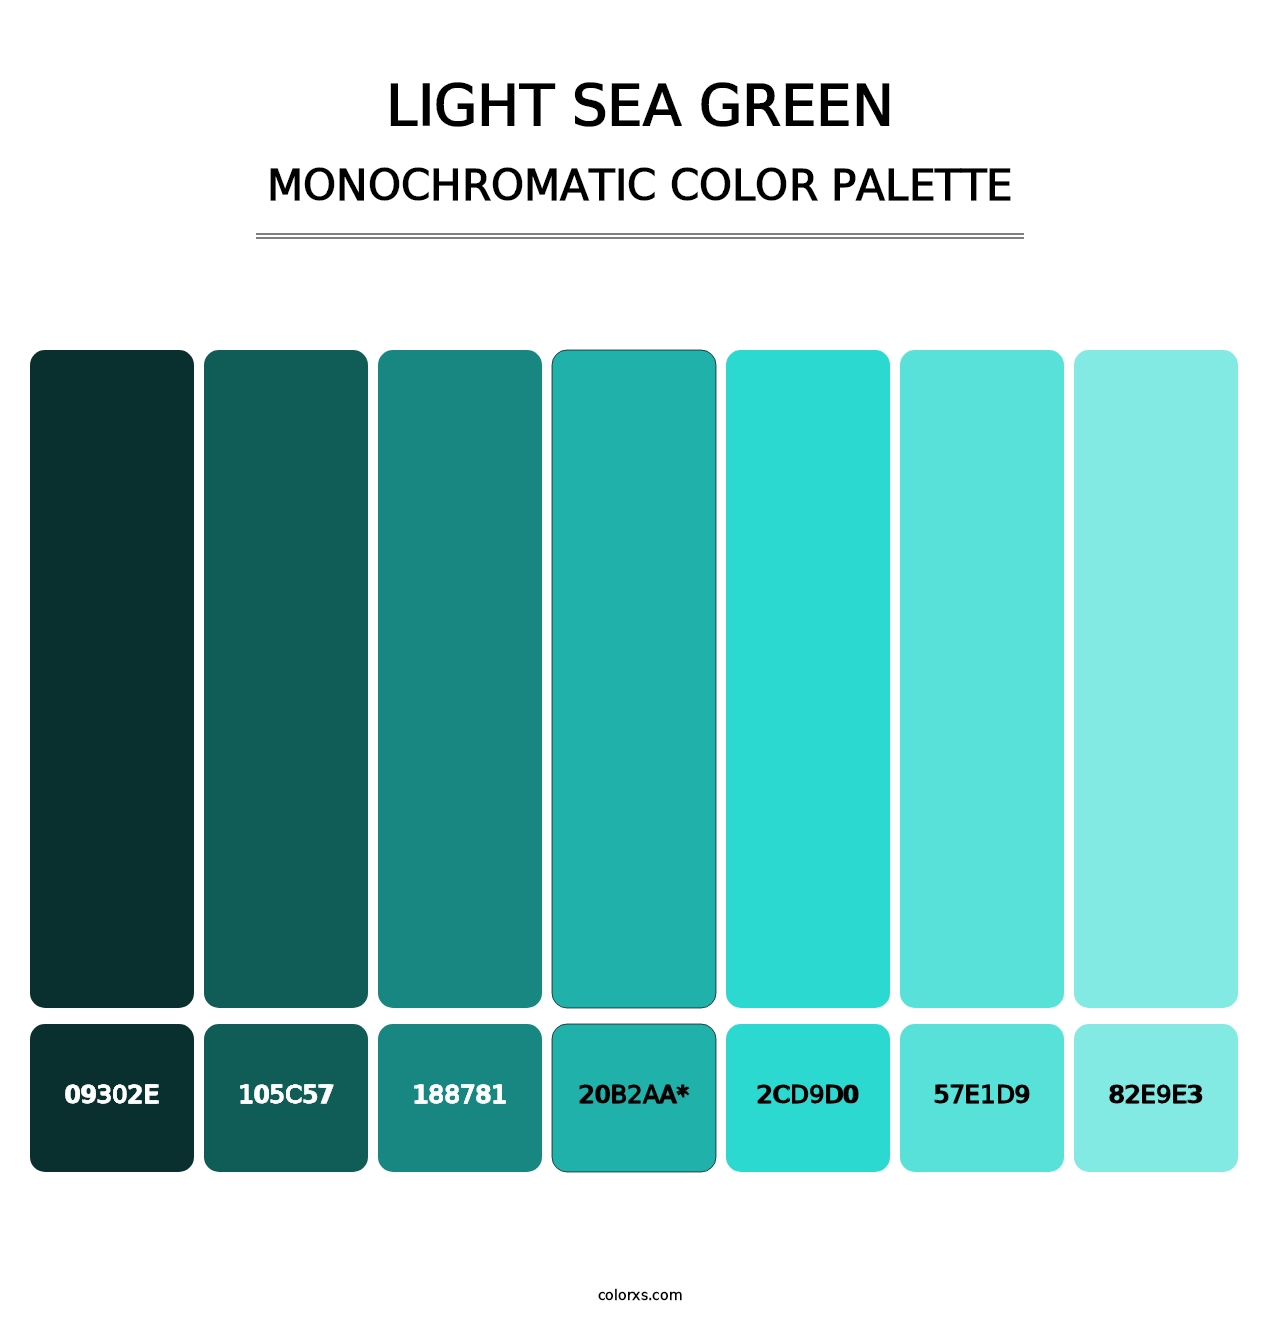 Light Sea Green - Monochromatic Color Palette